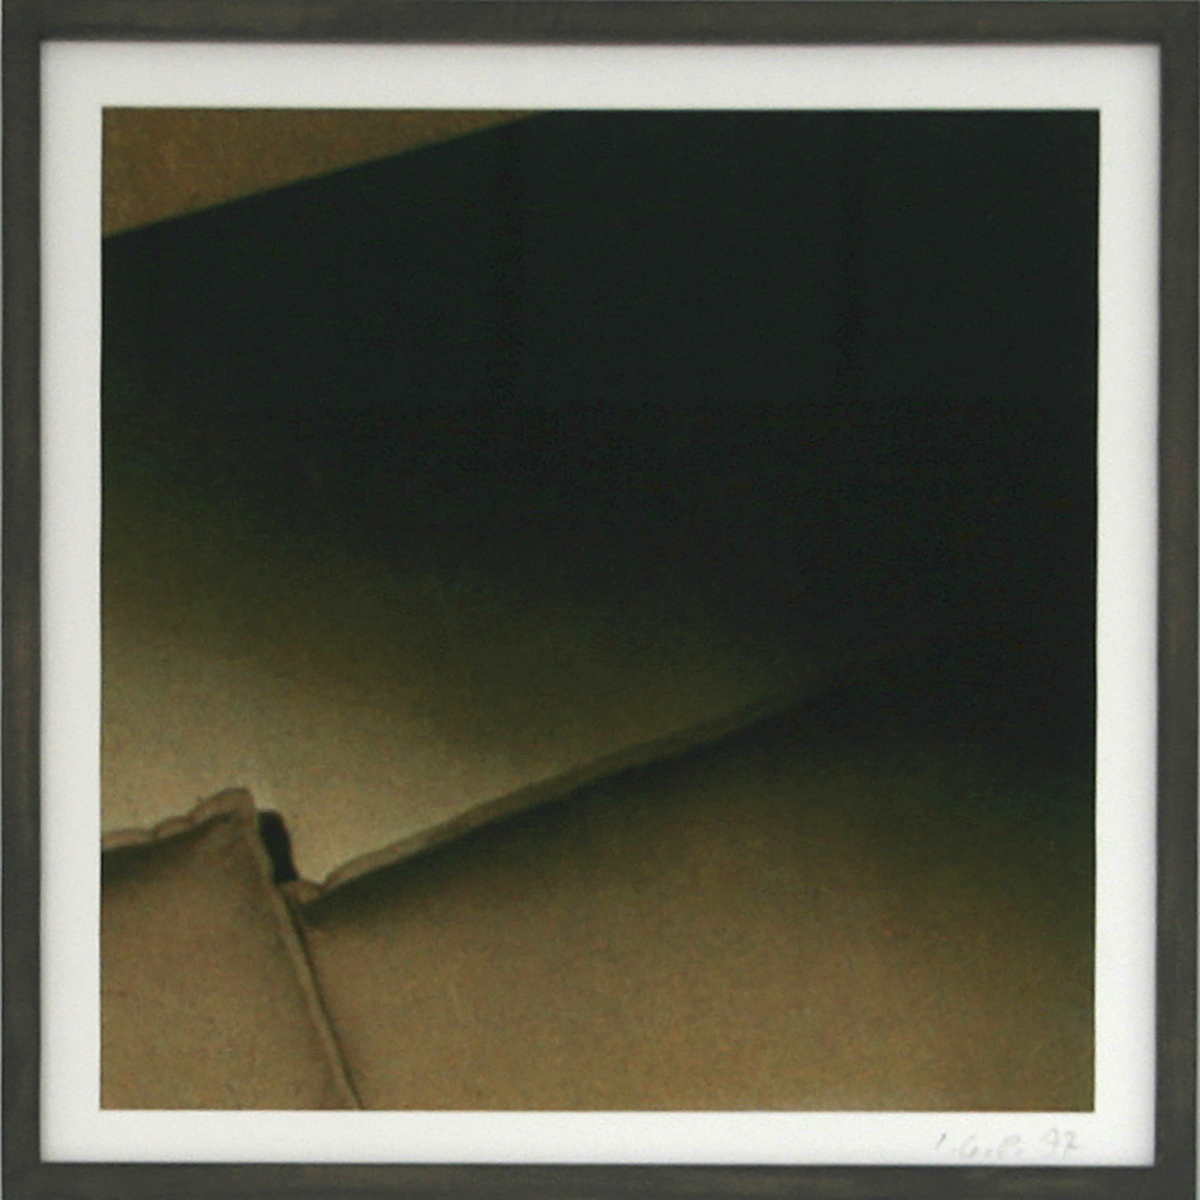 Vergrößerte Funde 2, 1977/201630 x 30 cmausgeschnittenes Papier, Pigmentdruck auf HahnemühleAuflage: 3